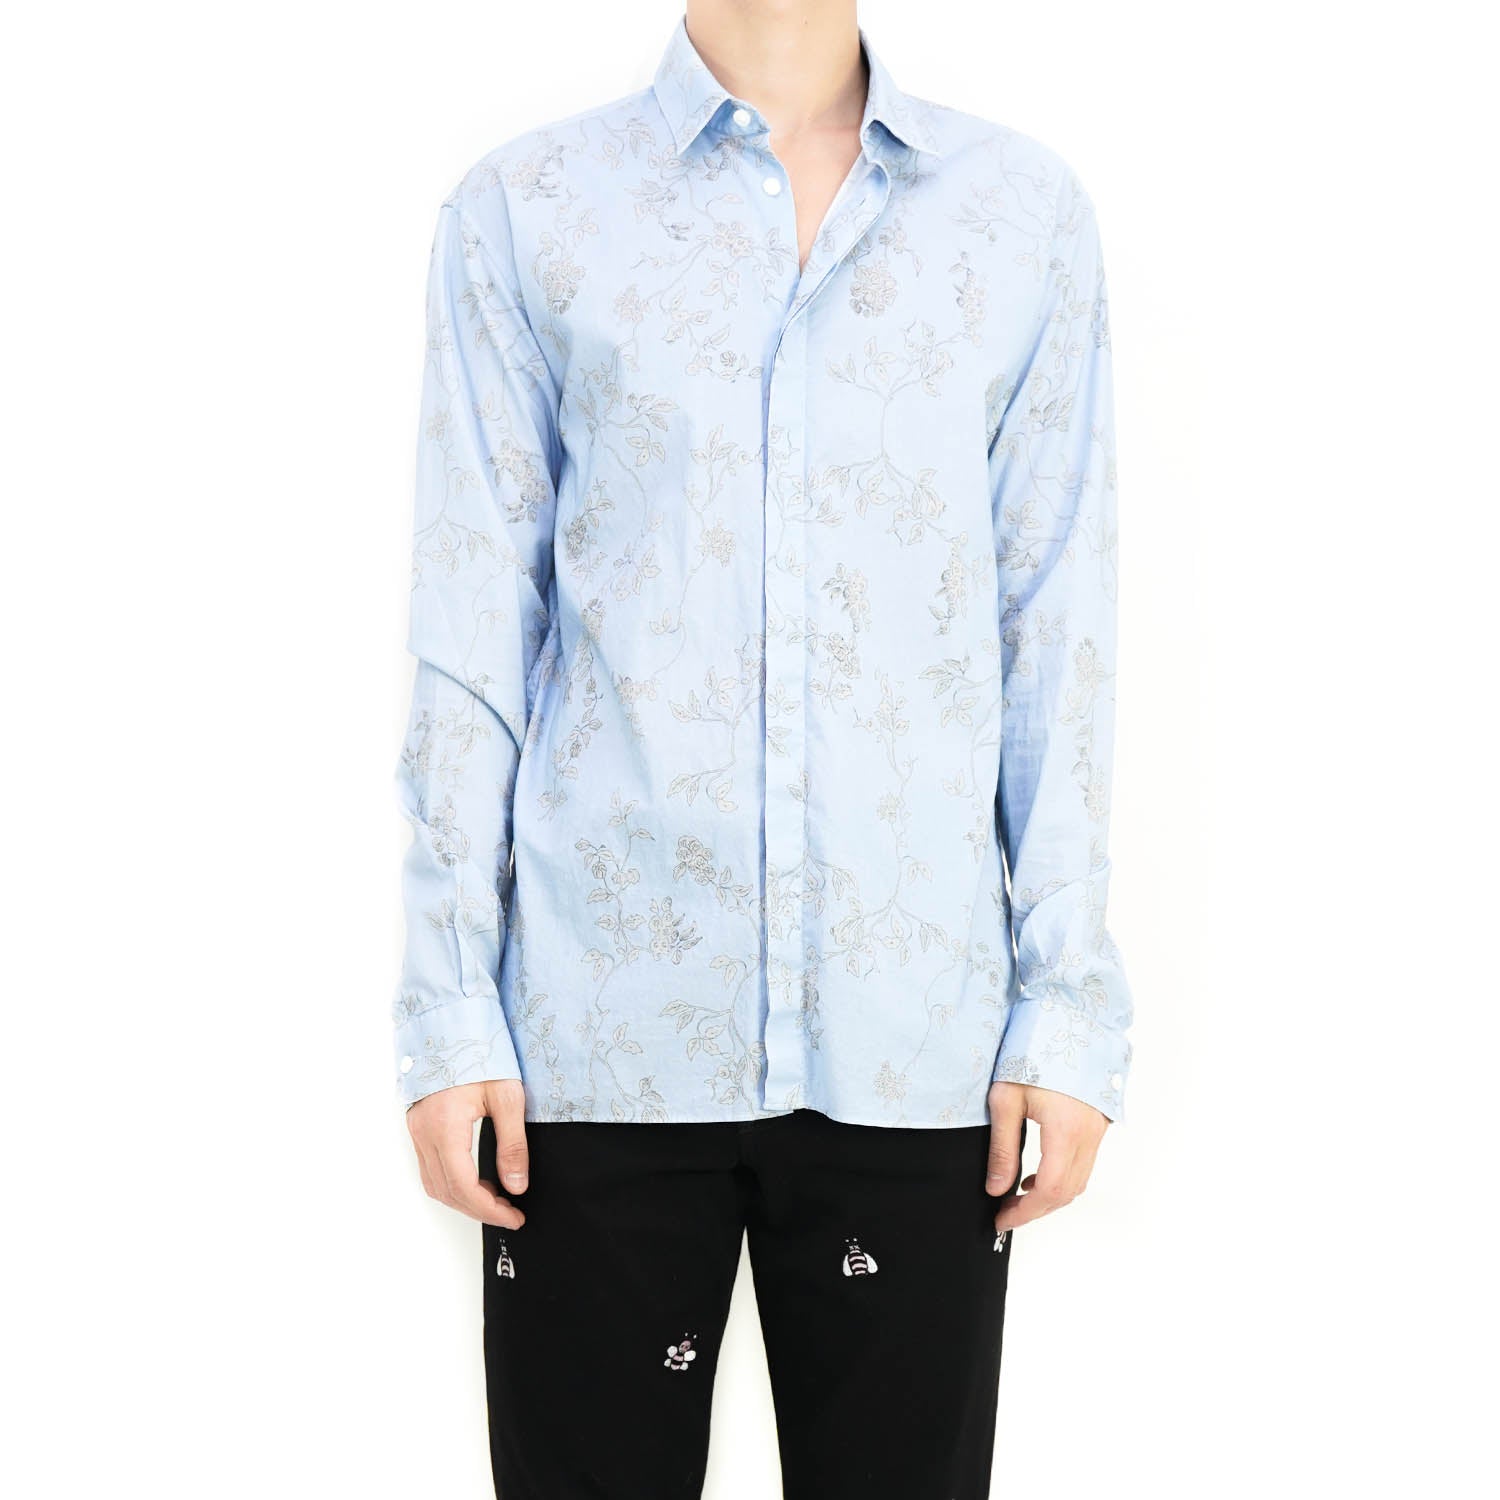 SS15 Light Blue Floral Shirt